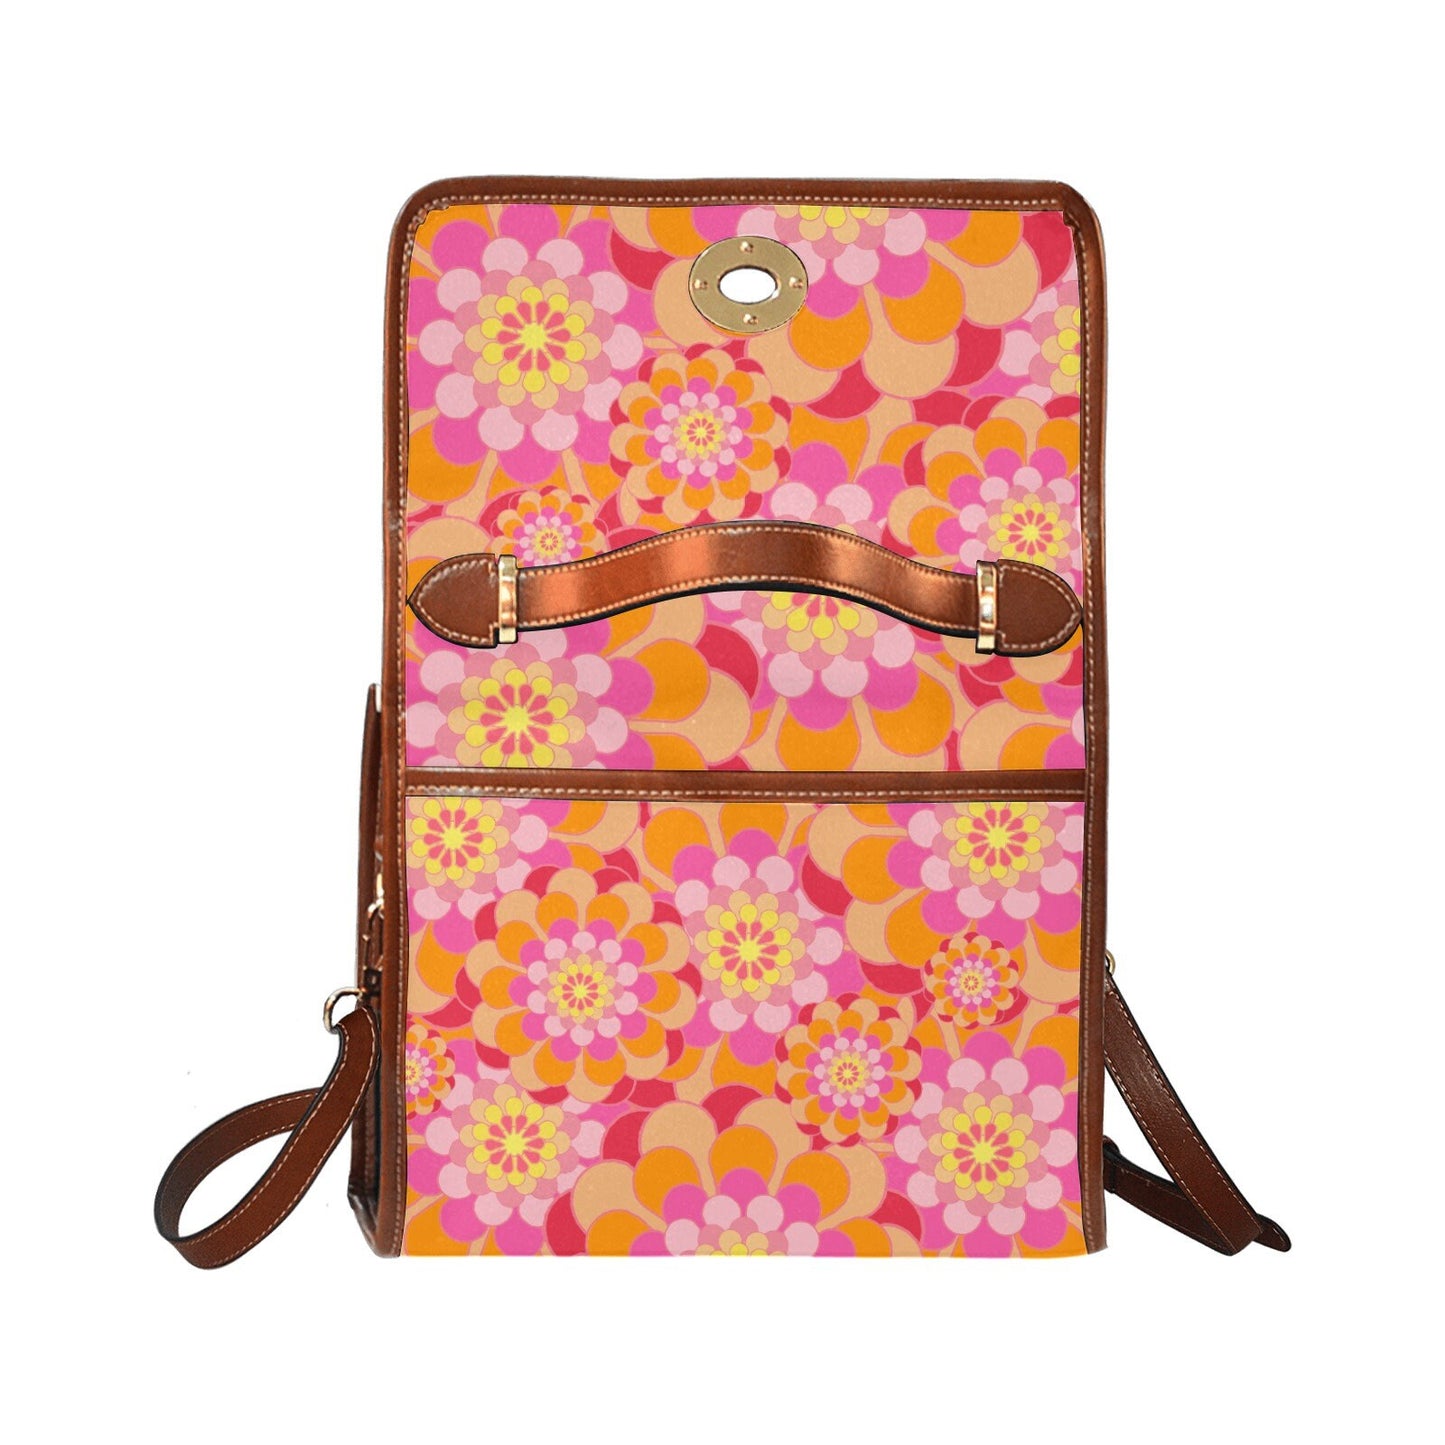 Damenhandtasche, Retro-Handtasche, Damengeldbörse, Mod 60er, 70er-Jahre-Stil-Tasche, 70er-Jahre-Stil-Geldbörse, Blumenhandtasche, Blumengeldbörse, 70er-Jahre-inspiriert, 60er-Jahre-Stil